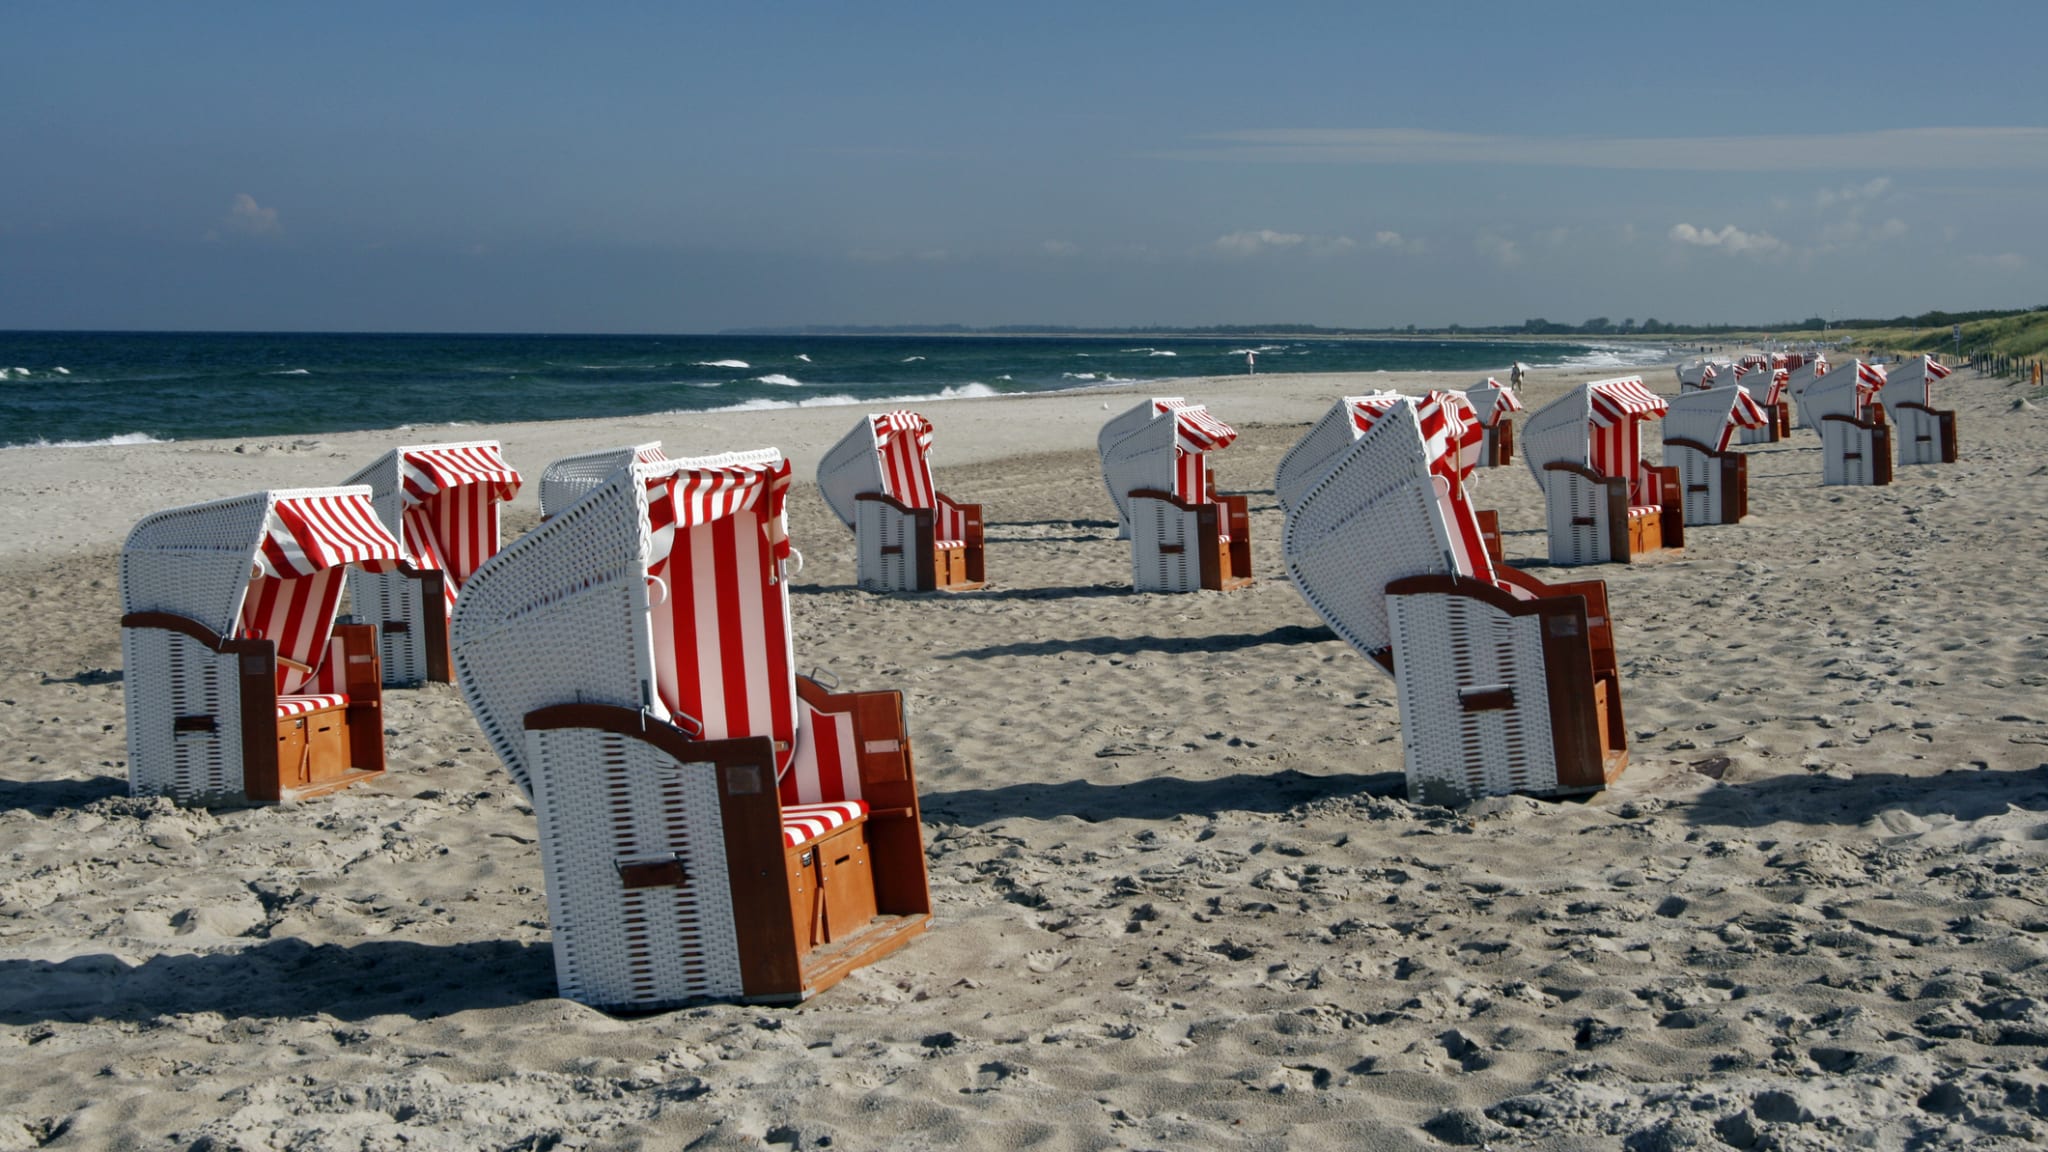 Strandkörbe am Strand von Dierhagen, Mecklenburg-Vorpommern, Deutschland © Michael Pasdzior/Photodisc via Getty Images